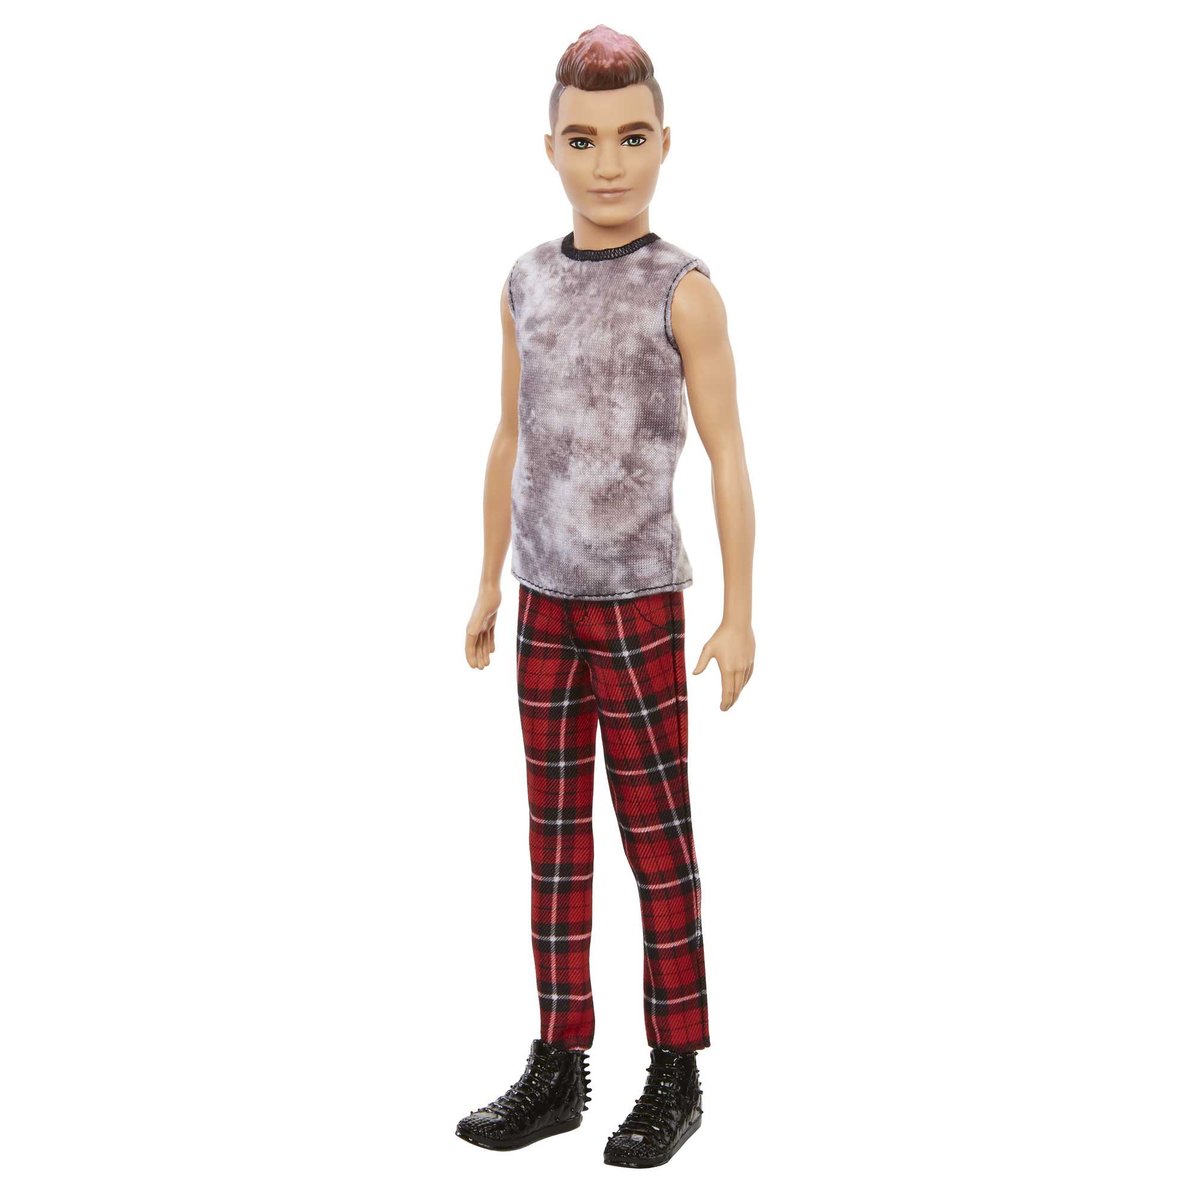 Mattel Lalka Barbie Fashionistas Ken Spodnie czerwona kratka GXP-783783